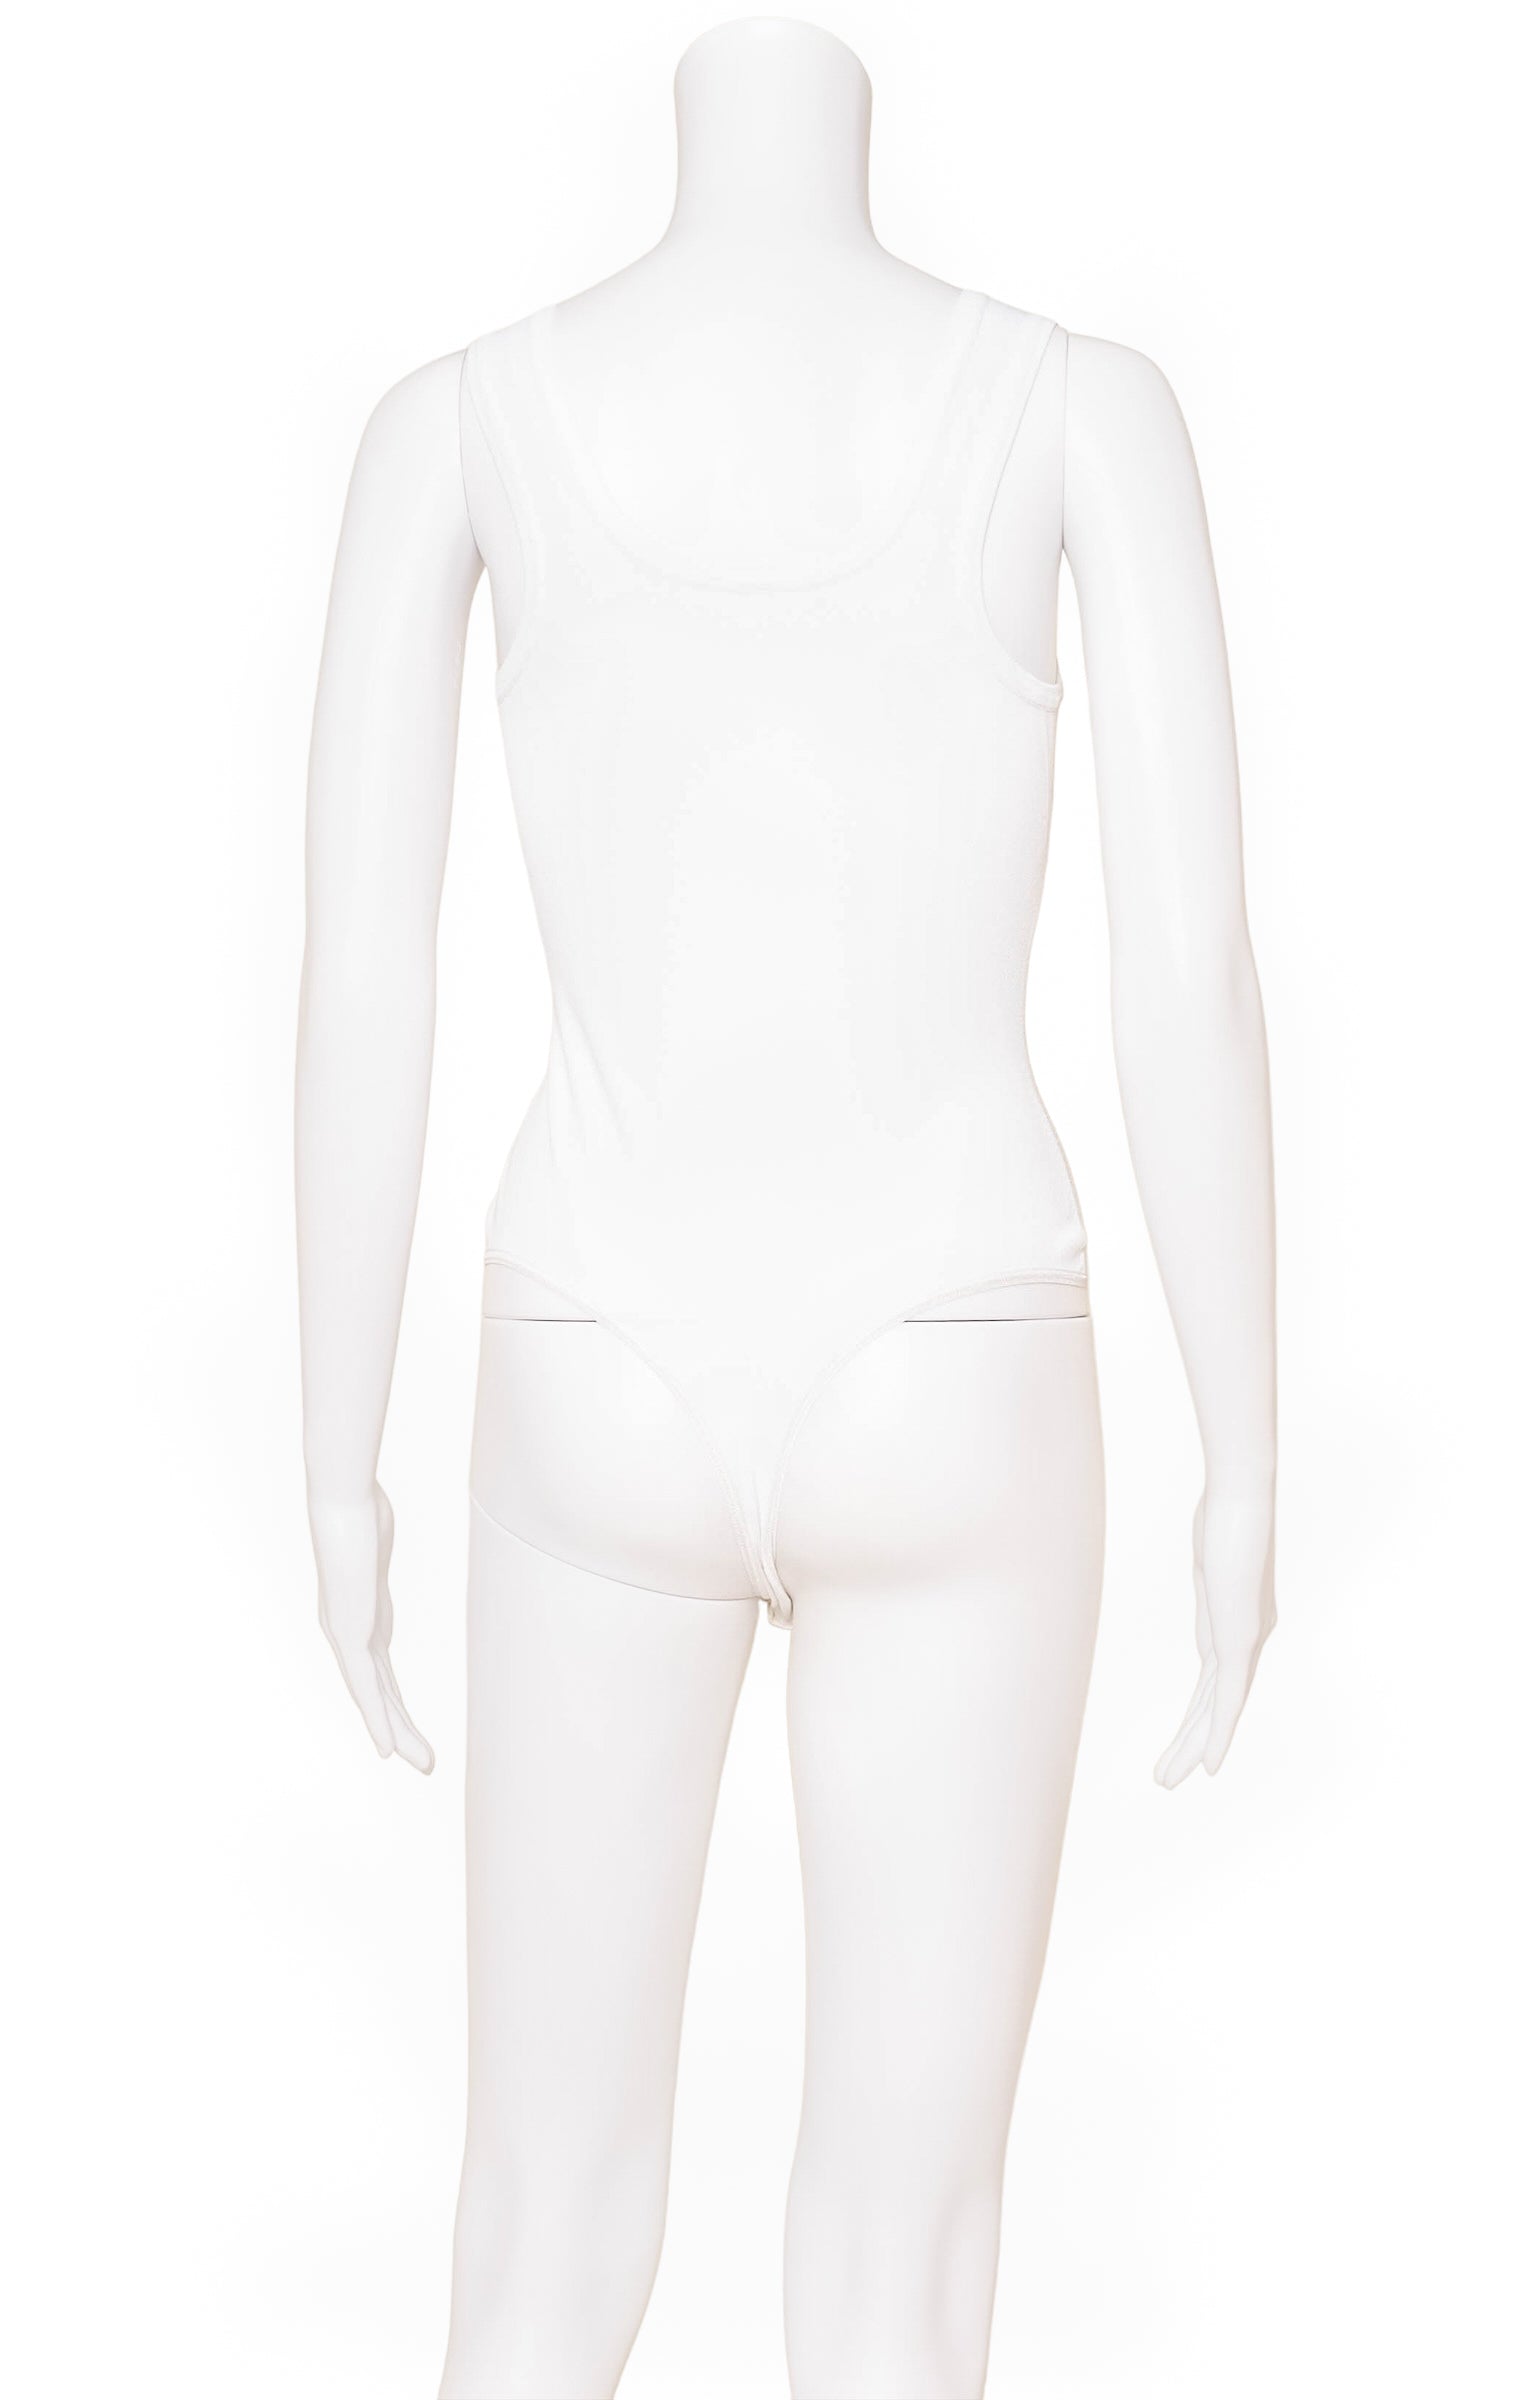 ALAÏA Bodysuit Size: FR 40 / Comparable to US 6-8